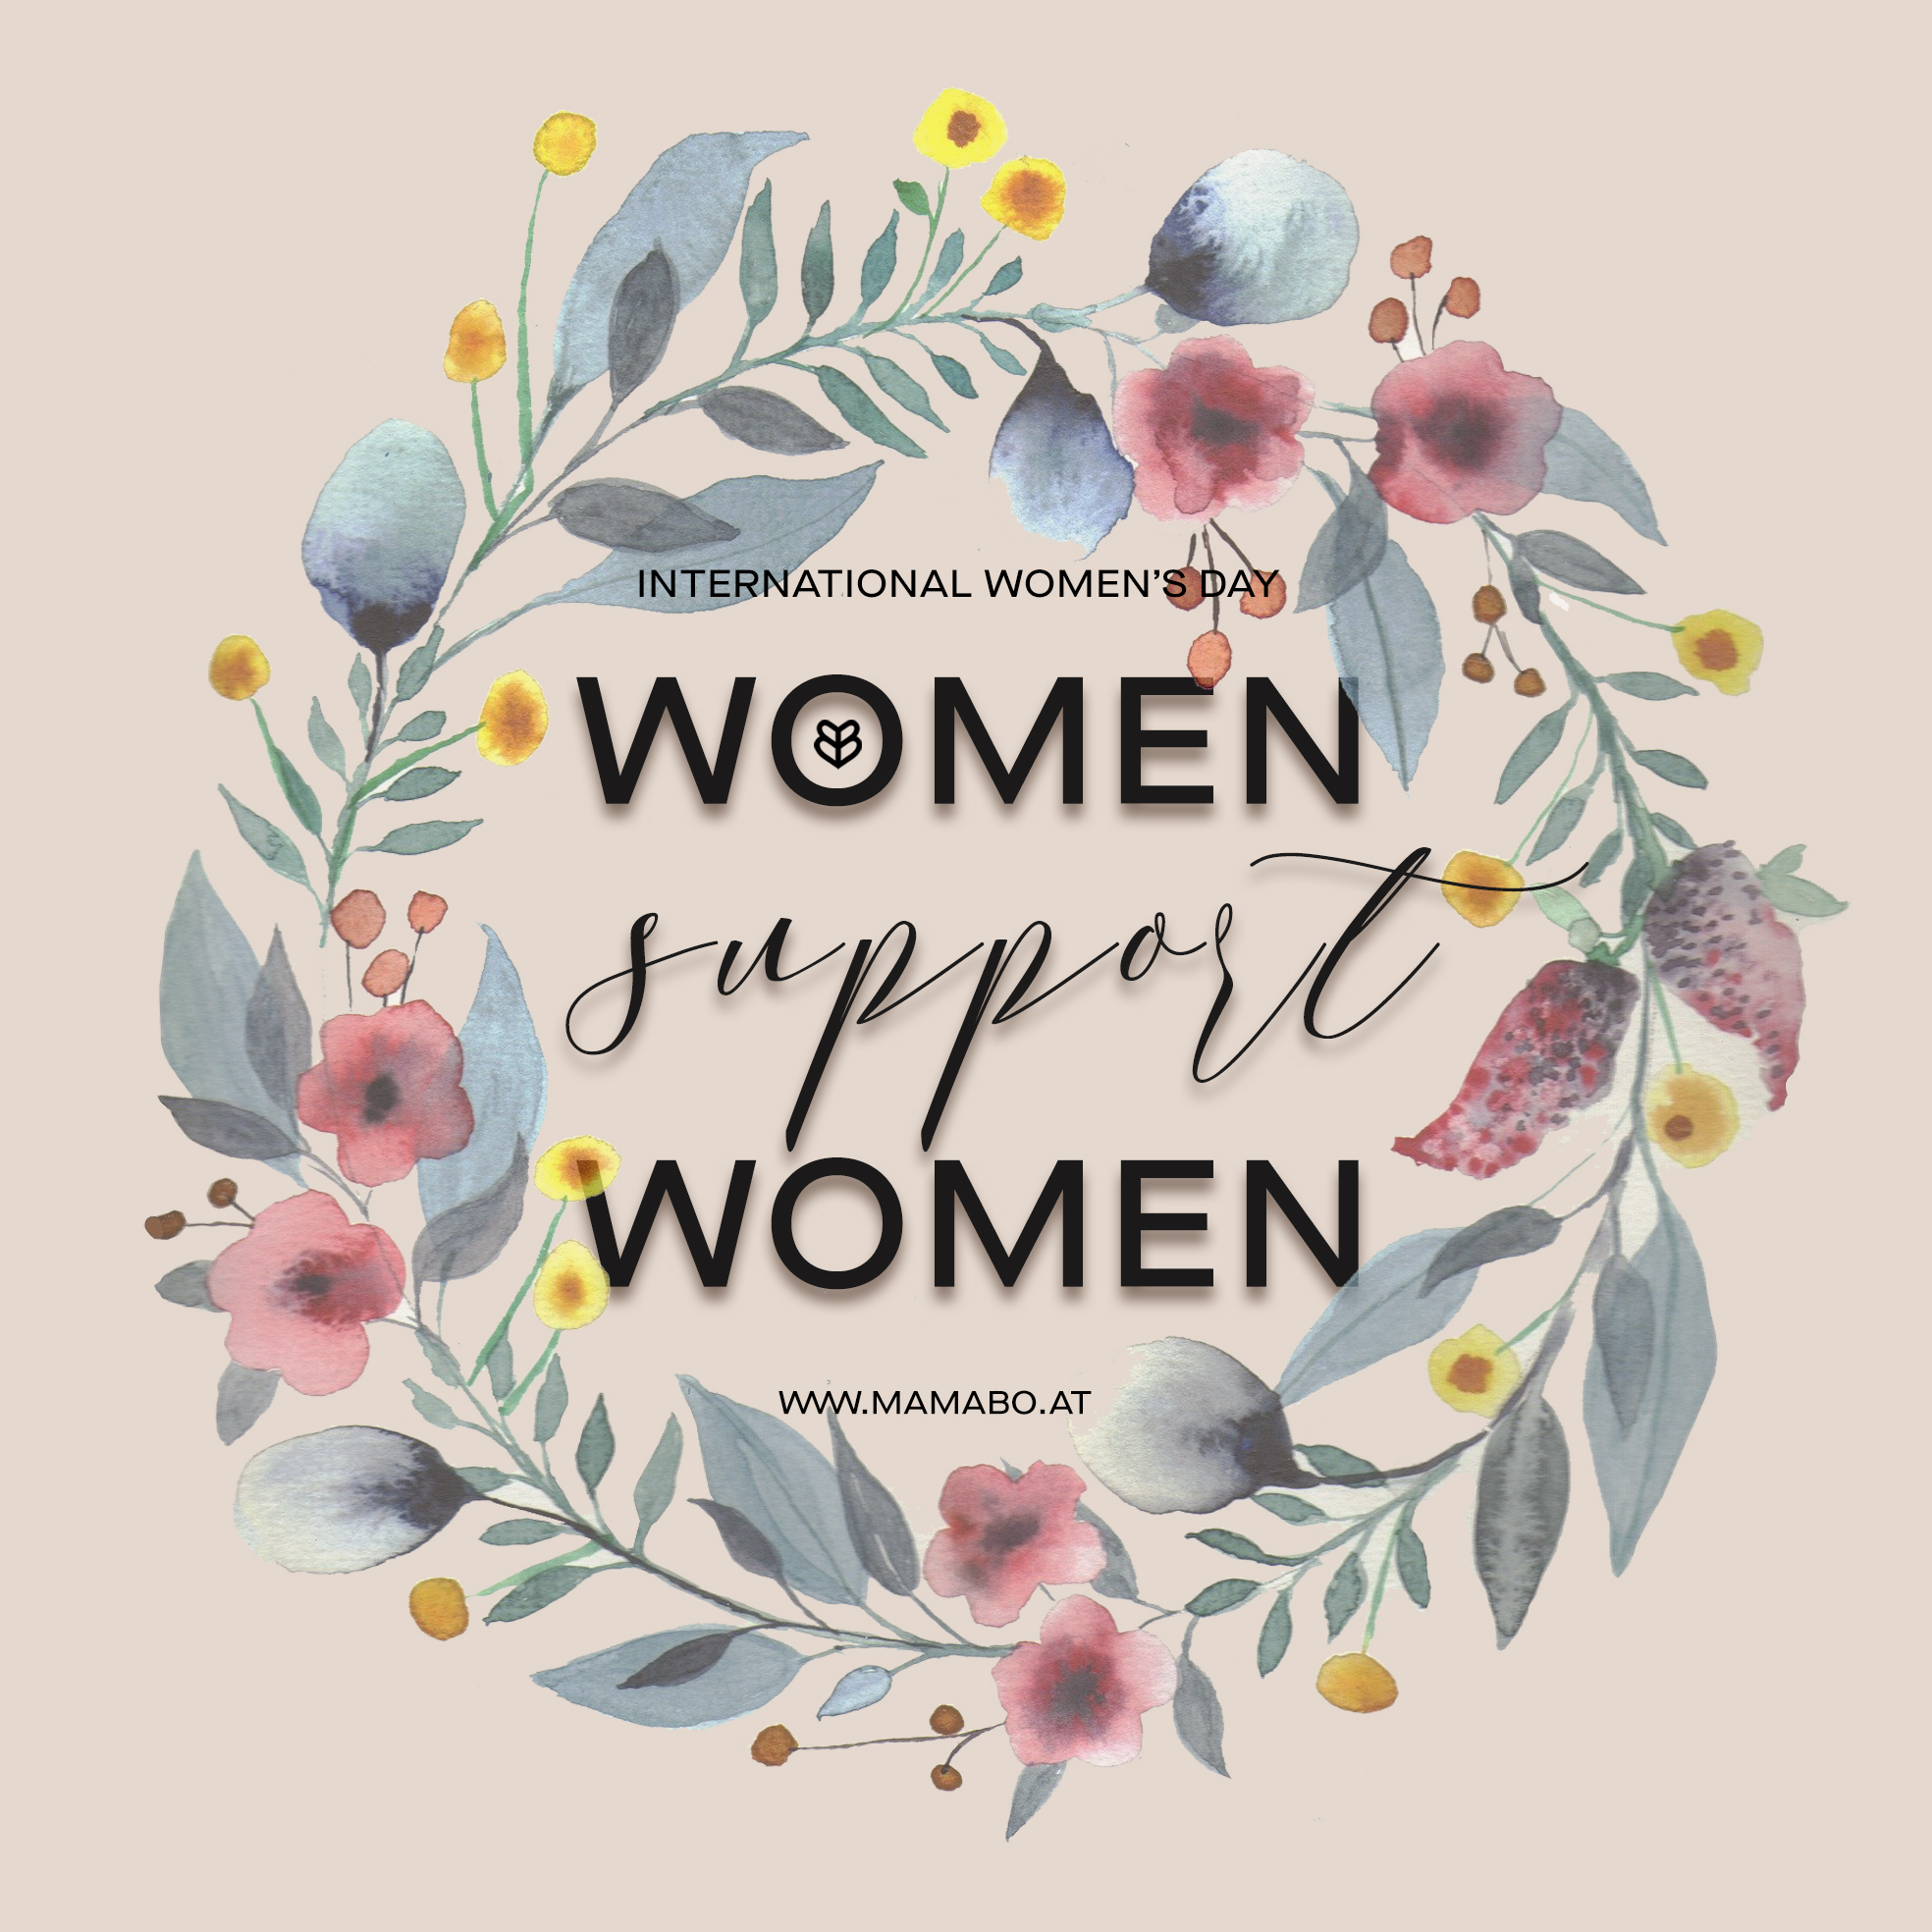 Frauen unterstützen Frauen